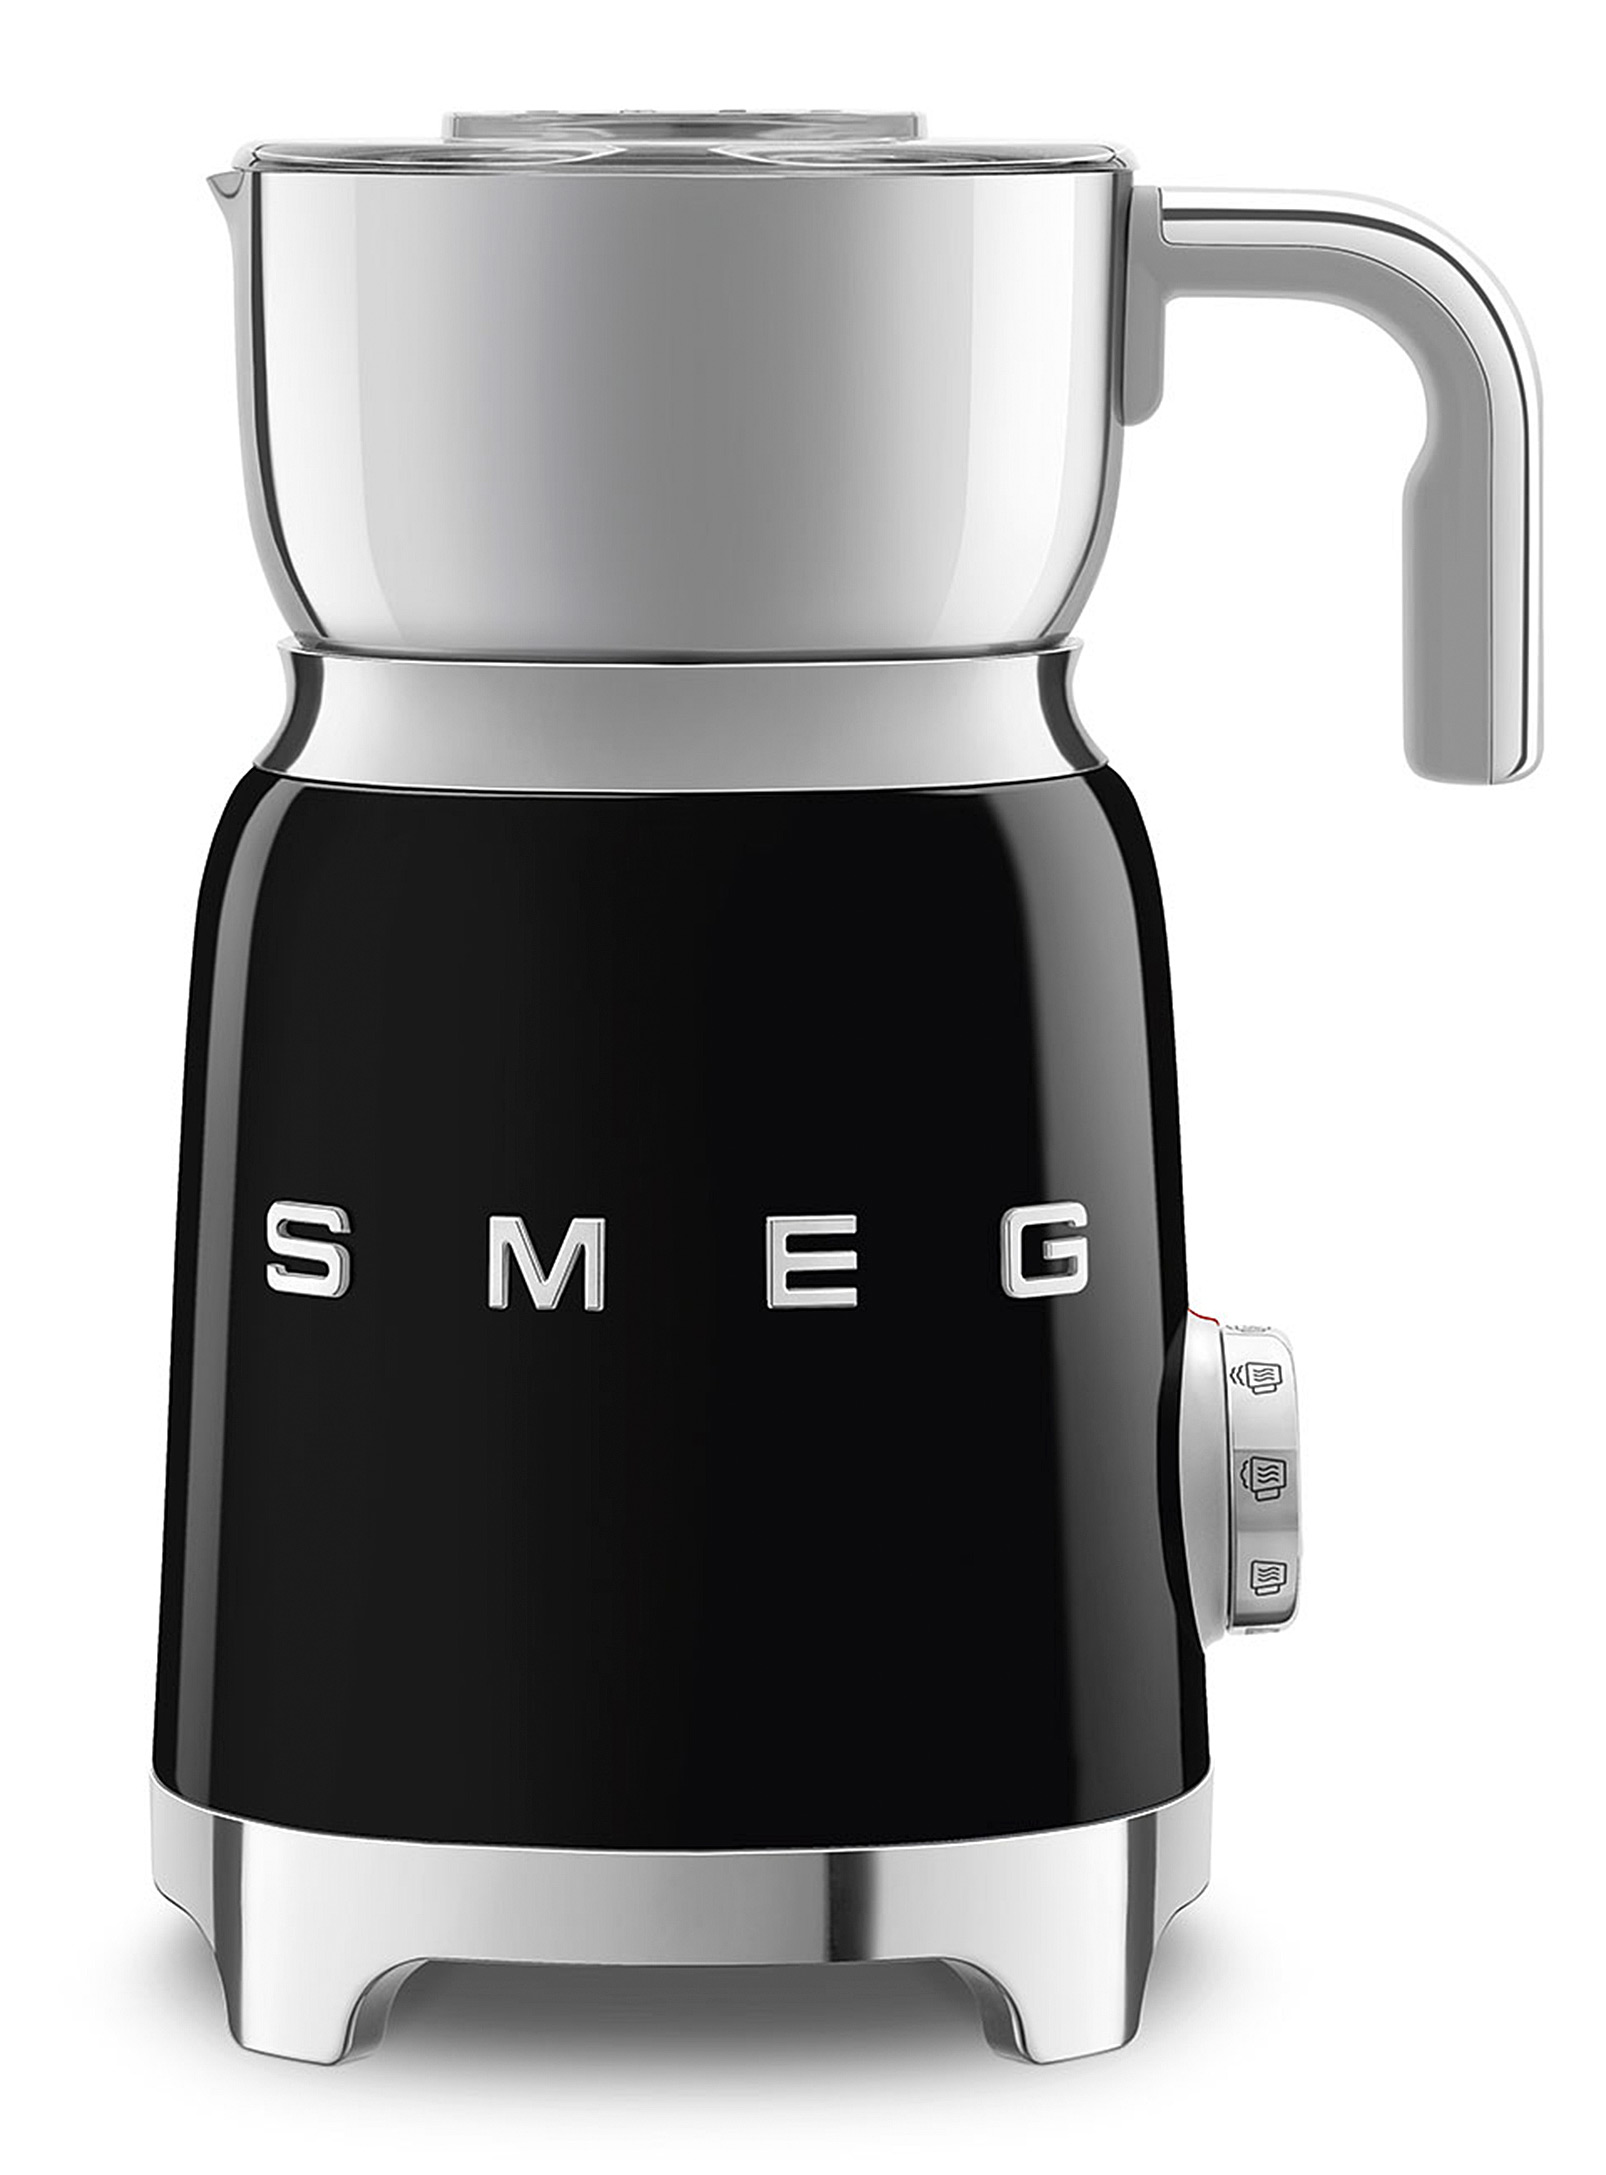 Smeg - Retro milk frother